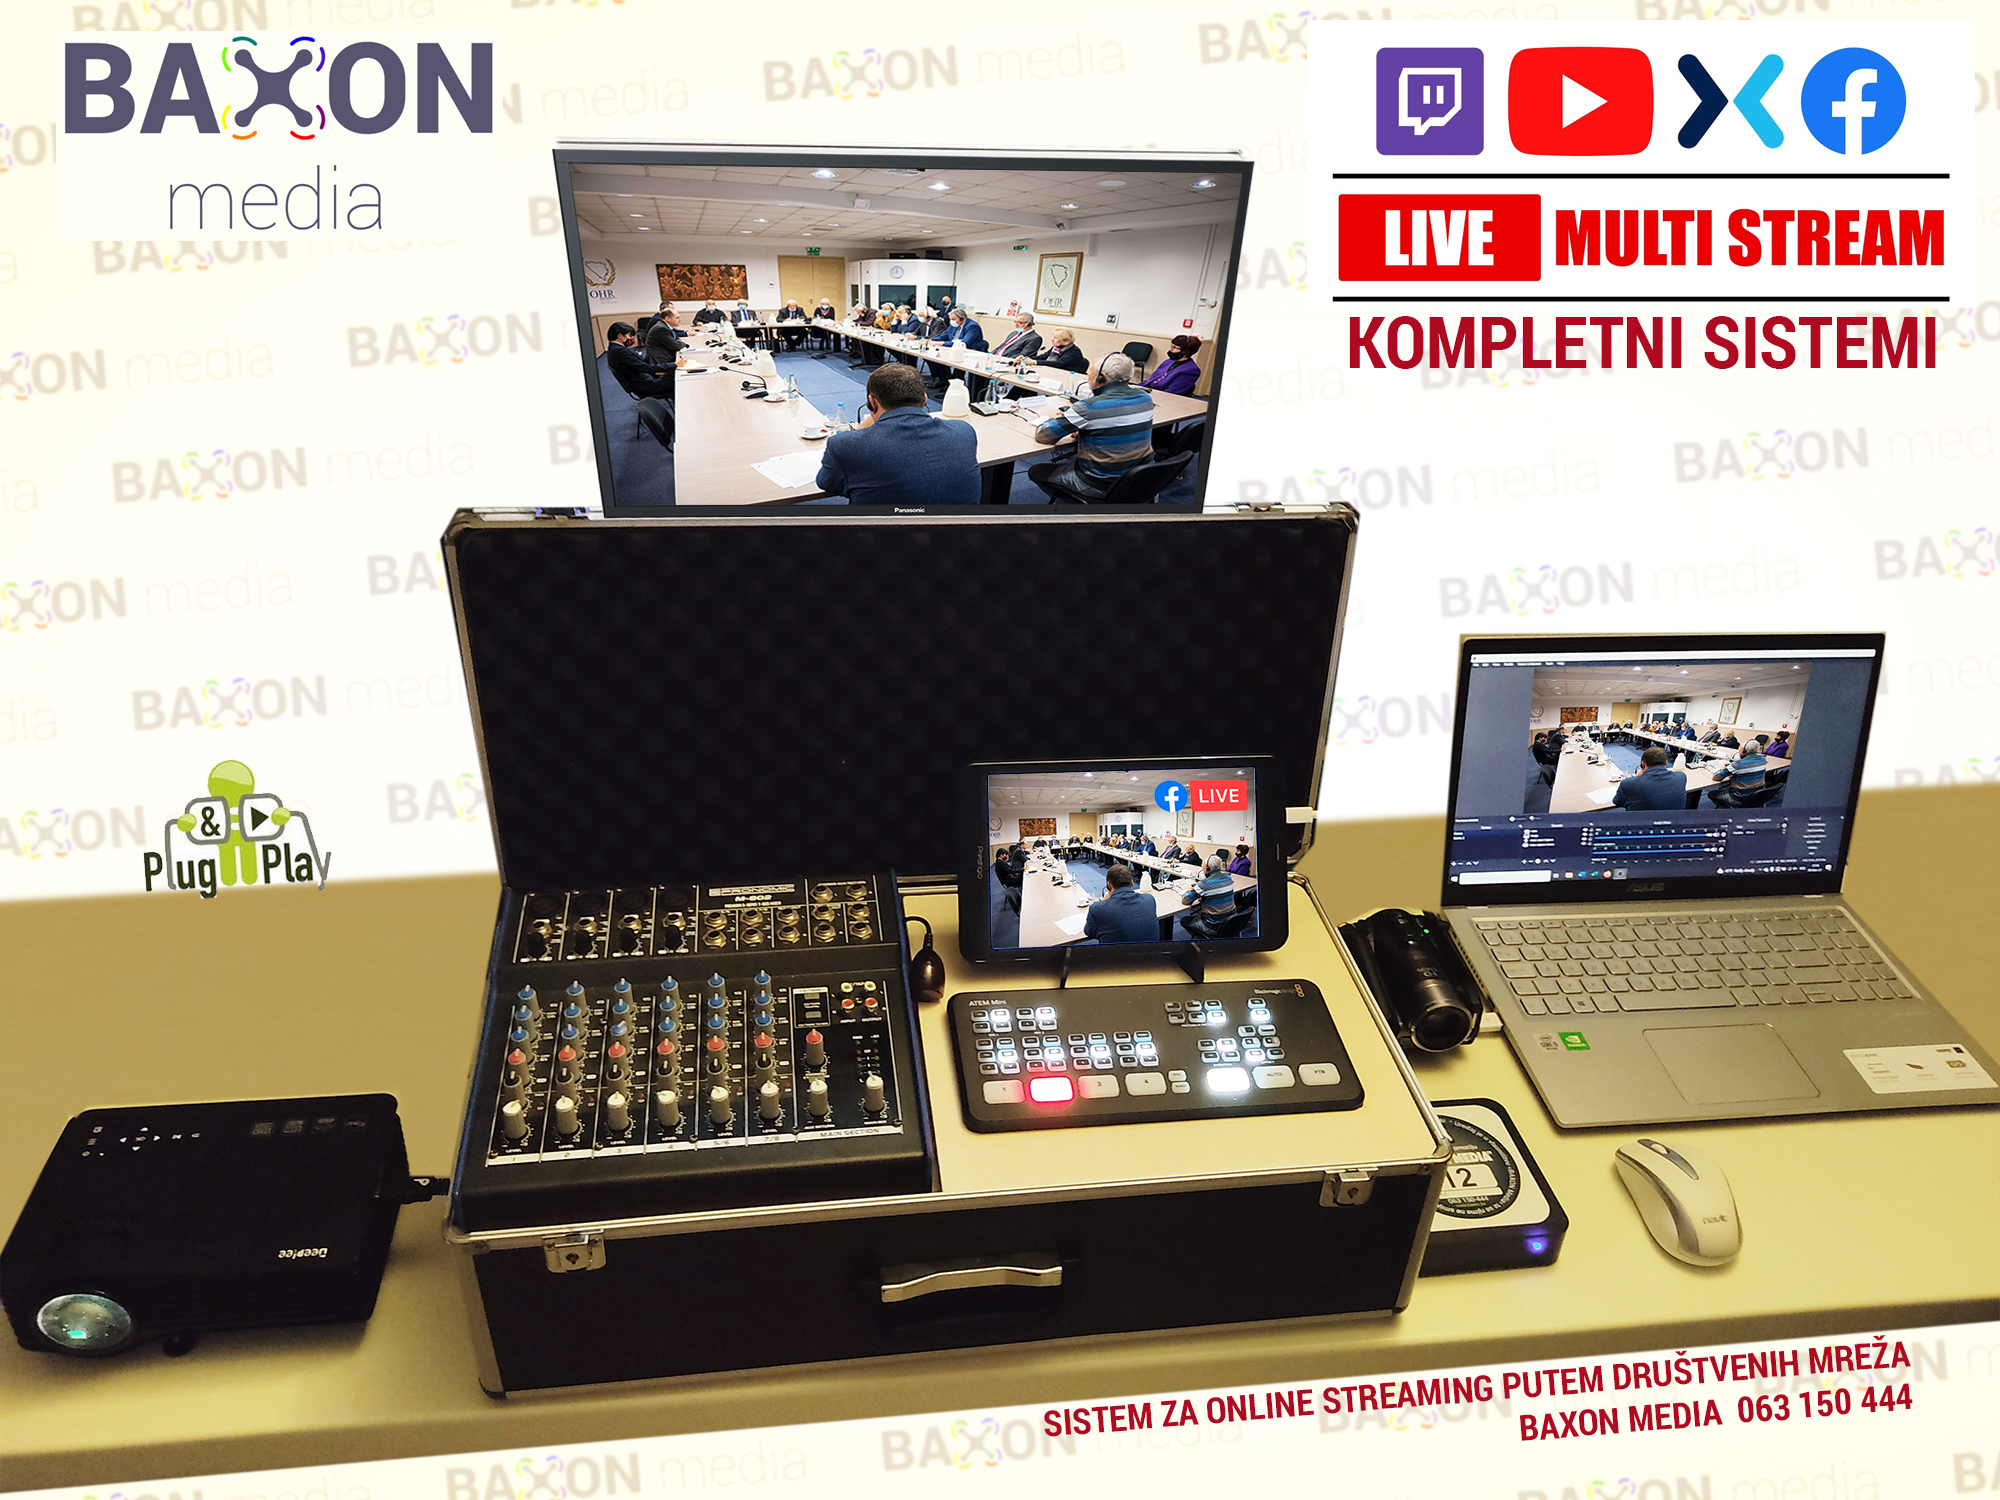 Baxon media streaming online setup